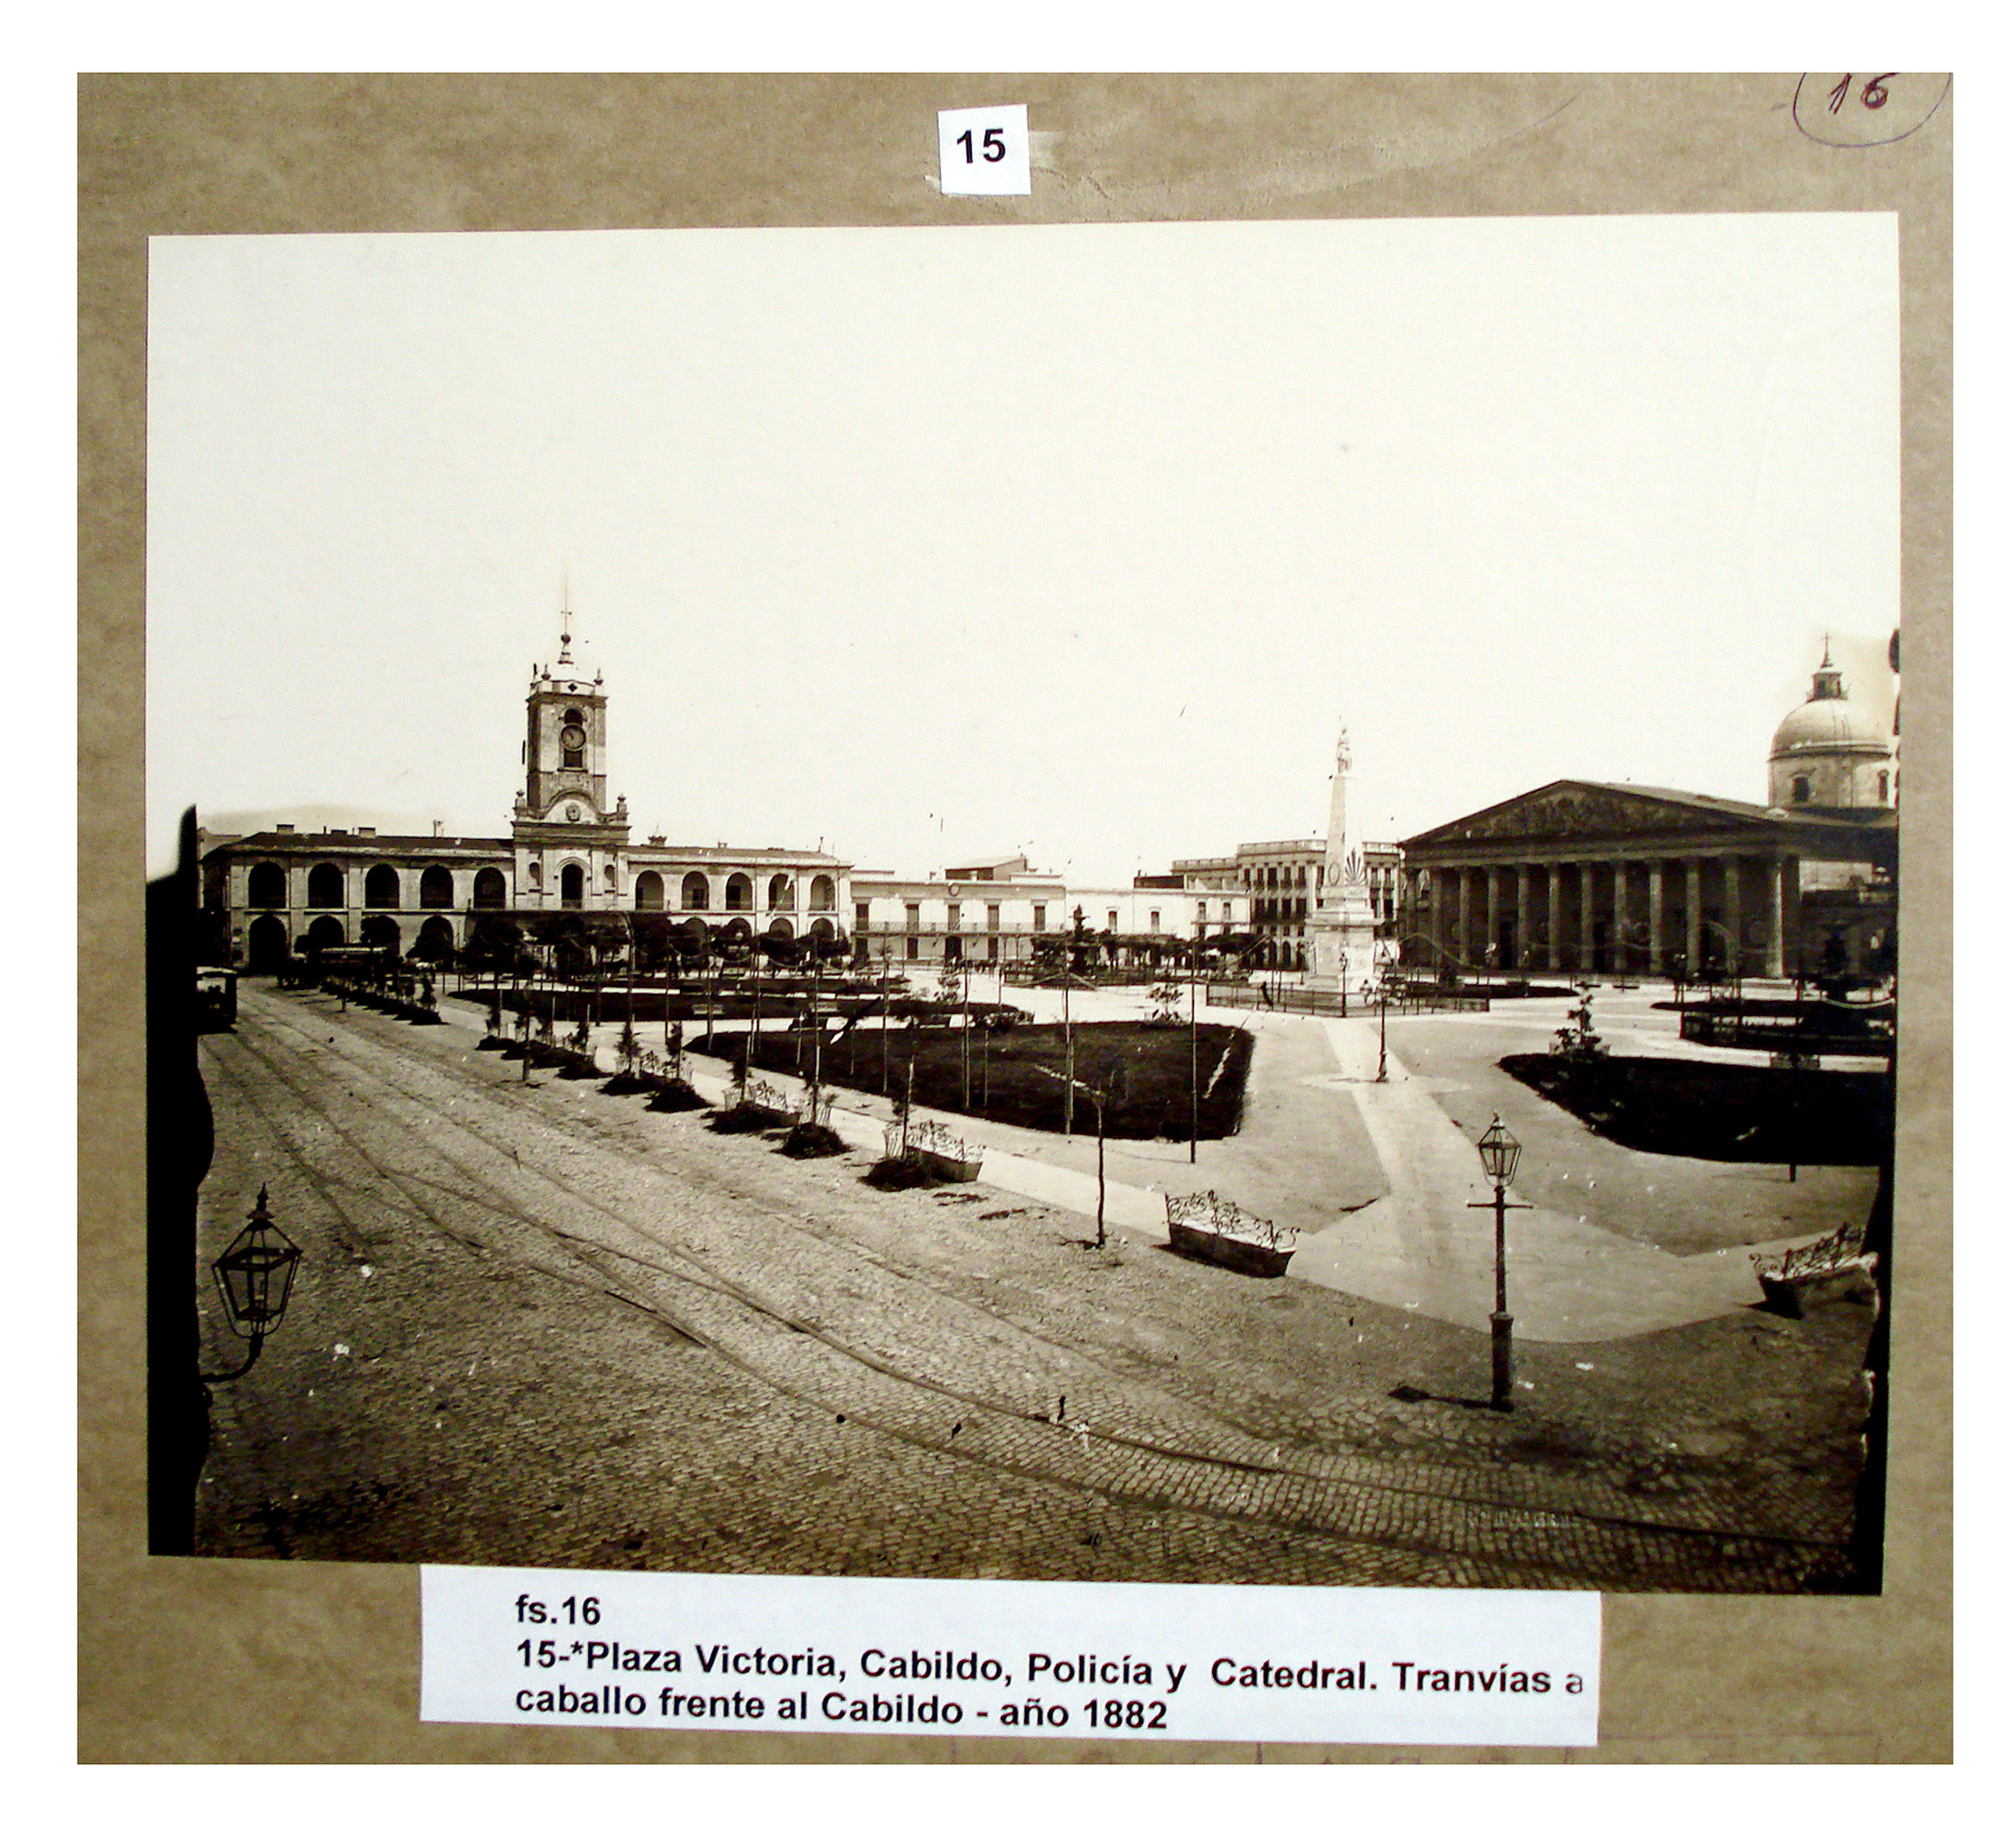 Plaza Victoria, Cabildo, Policía y Catedral